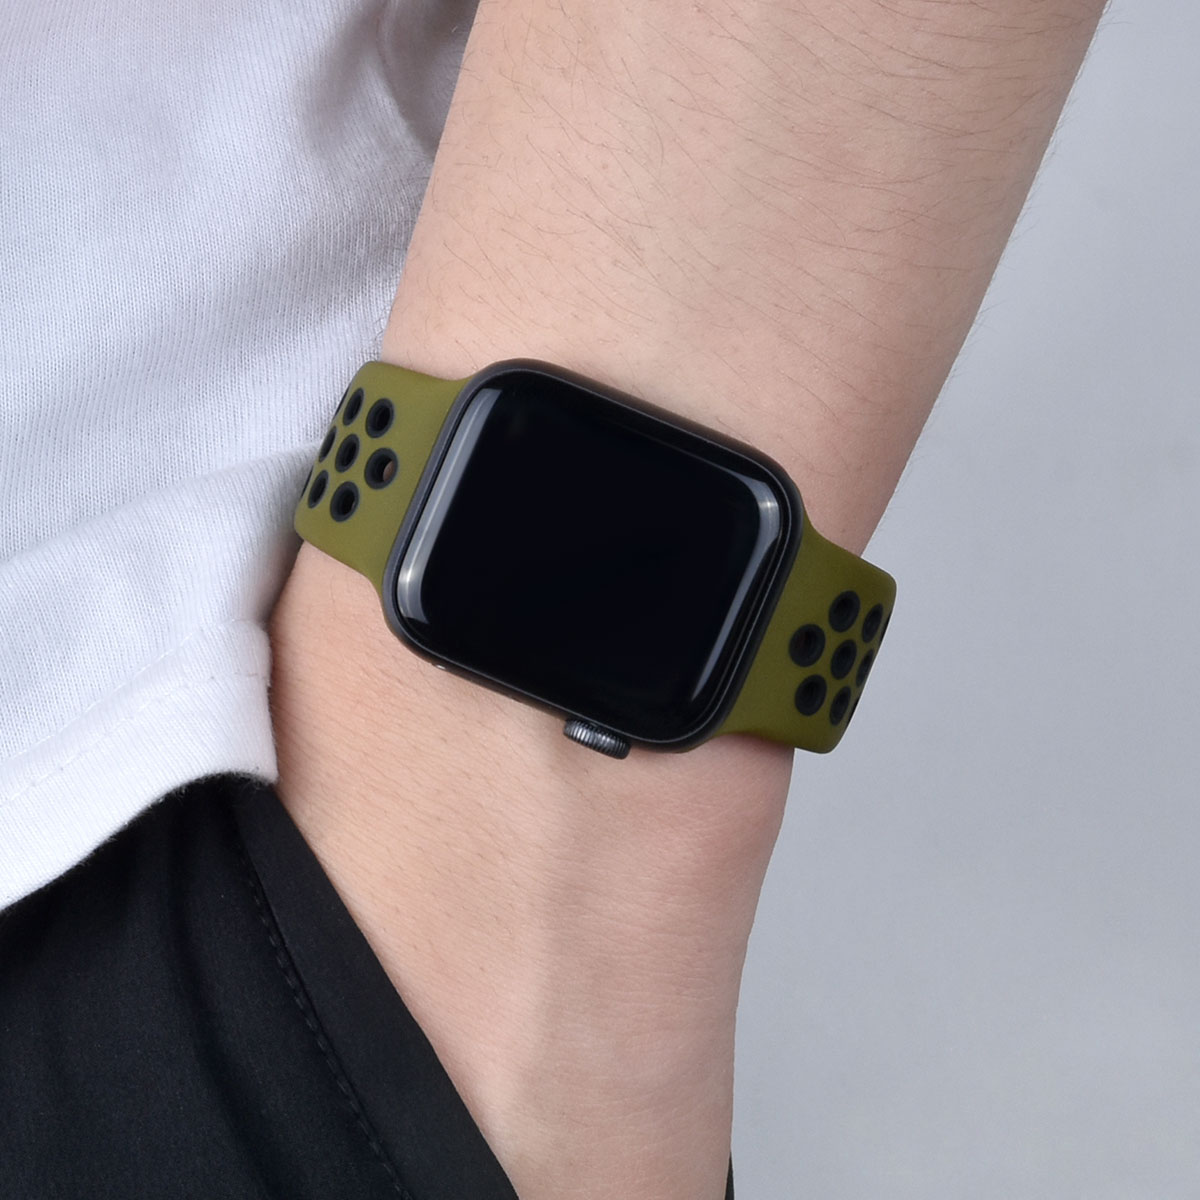 Dây Đeo Silicon Mềm Cho Đồng Hồ Thông Minh Apple Watch Series 1 2 3 42mm 38mm Iwatch 4 / 5 / 6 / Se 40mmm 44mm